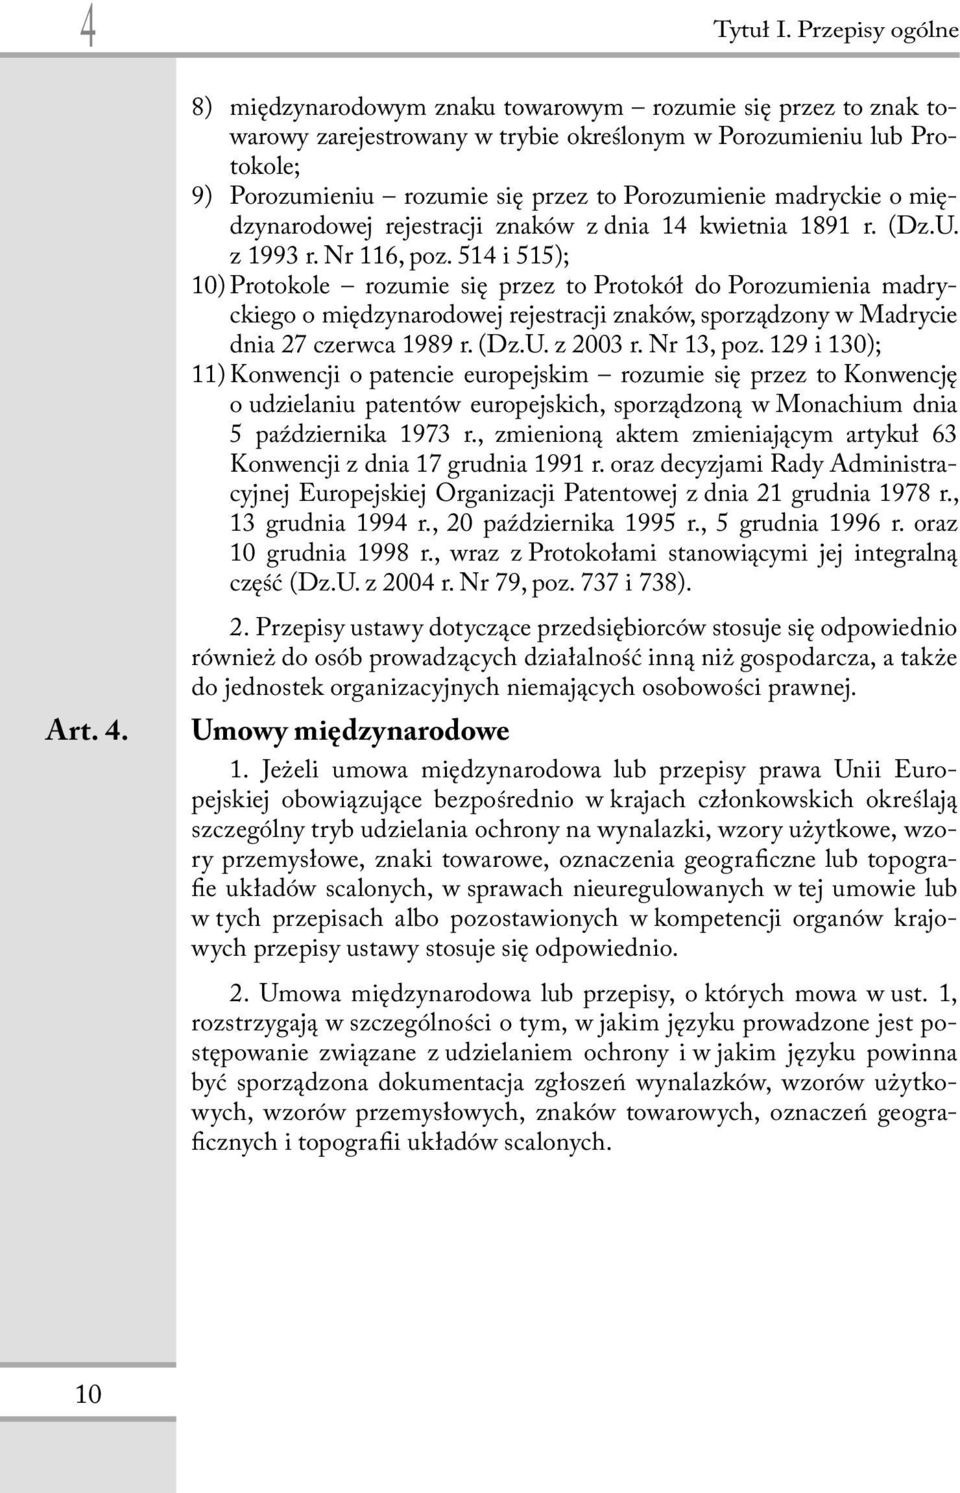 Porozumienie madryckie o międzynarodowej rejestracji znaków z dnia 14 kwietnia 1891 r. (Dz.U. z 1993 r. Nr 116, poz.